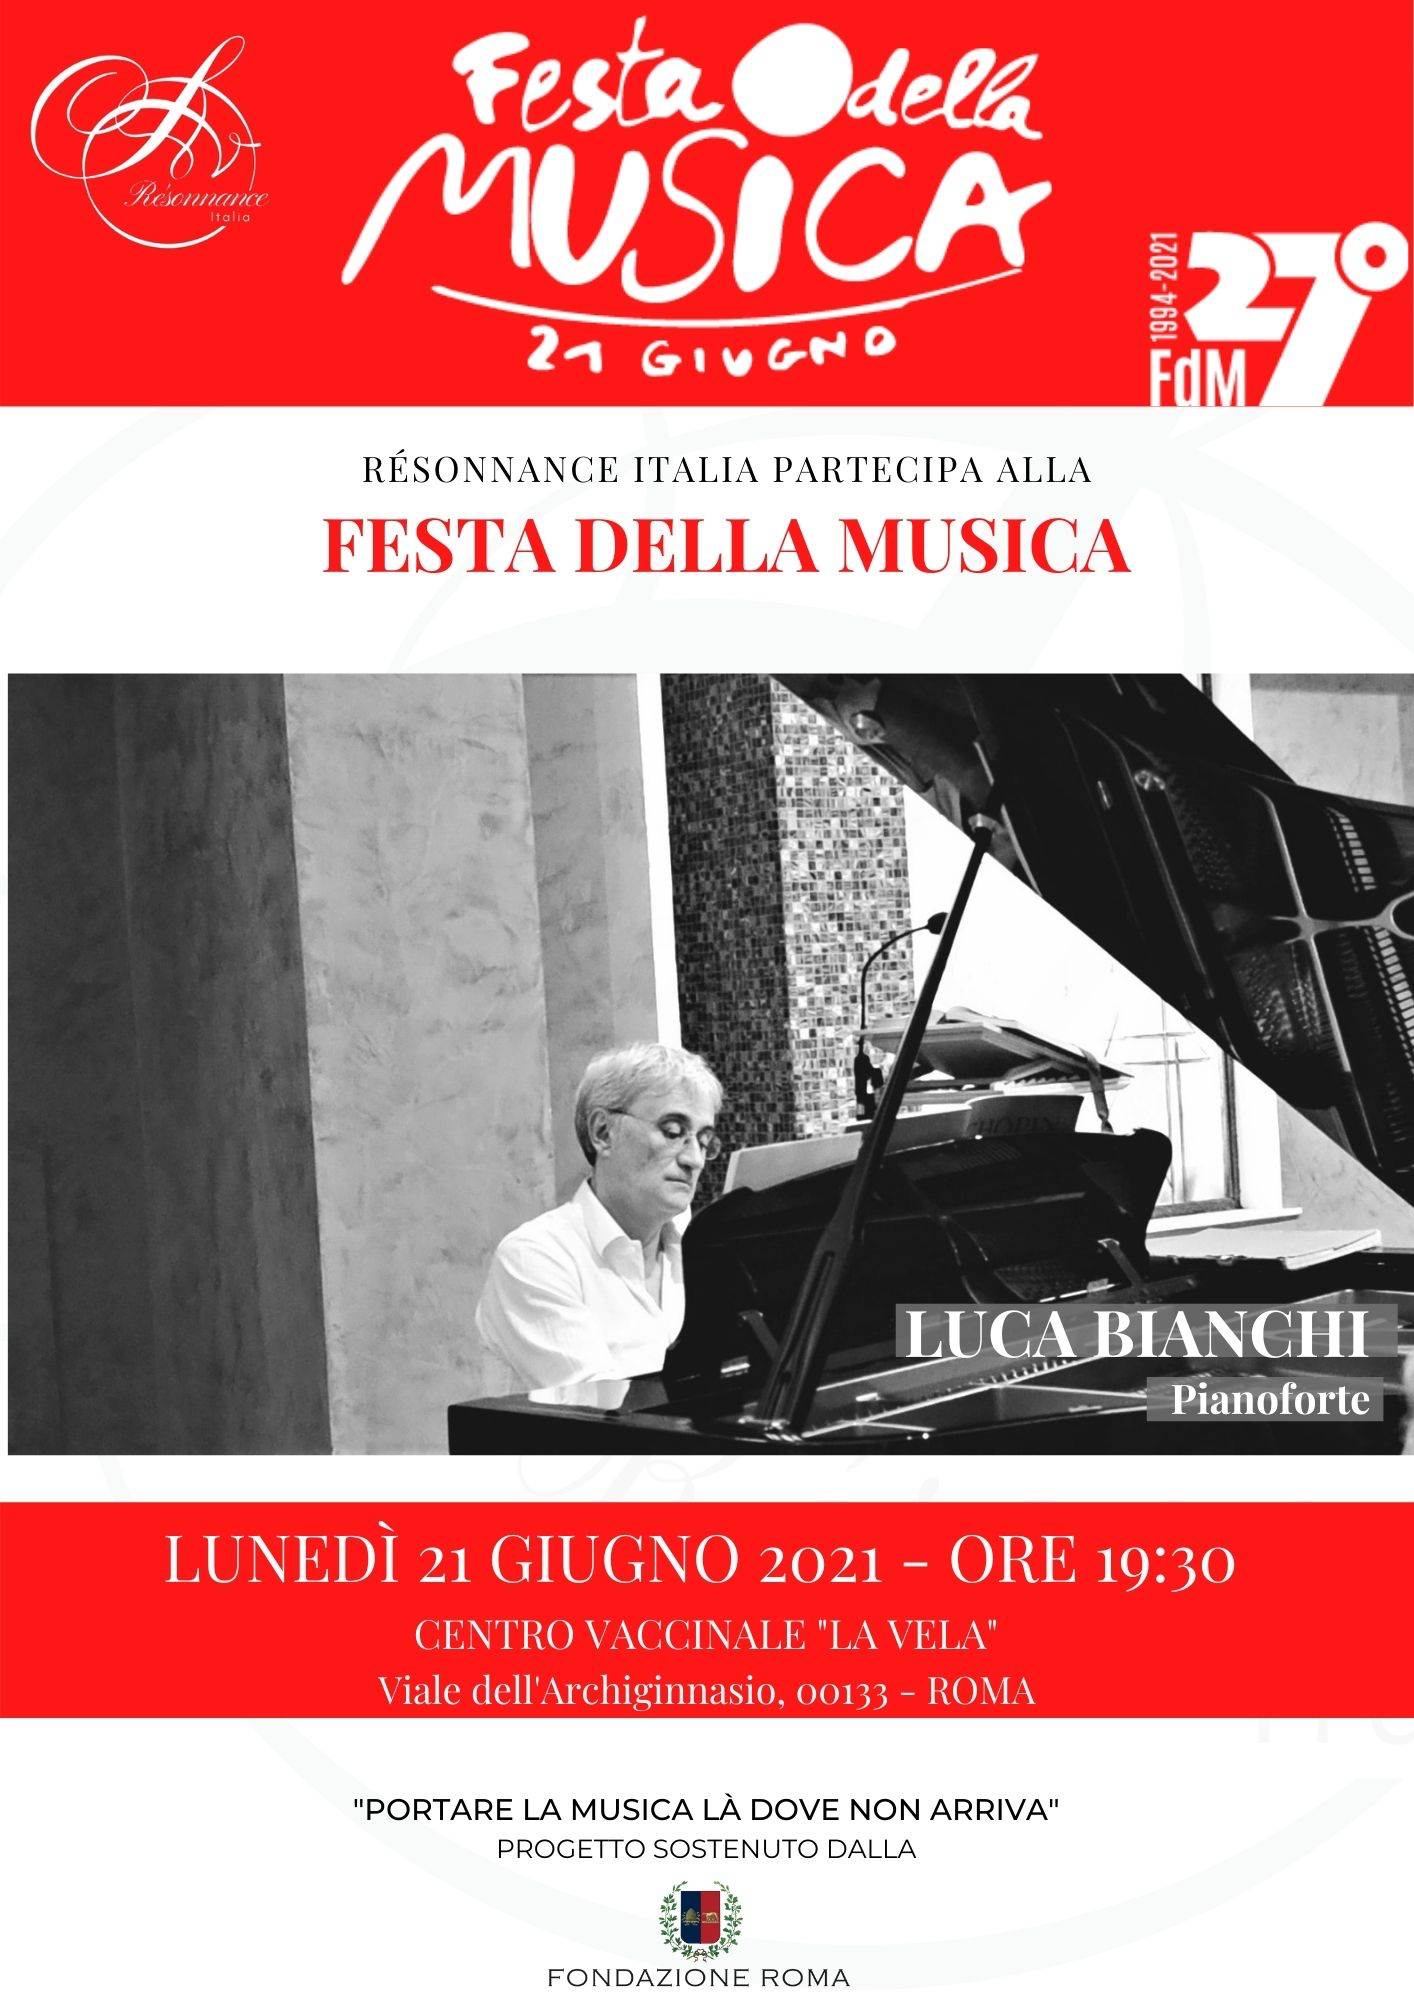 Concerto presso il Centro vaccinale "La Vela" - Luca Bianchi, pianoforte